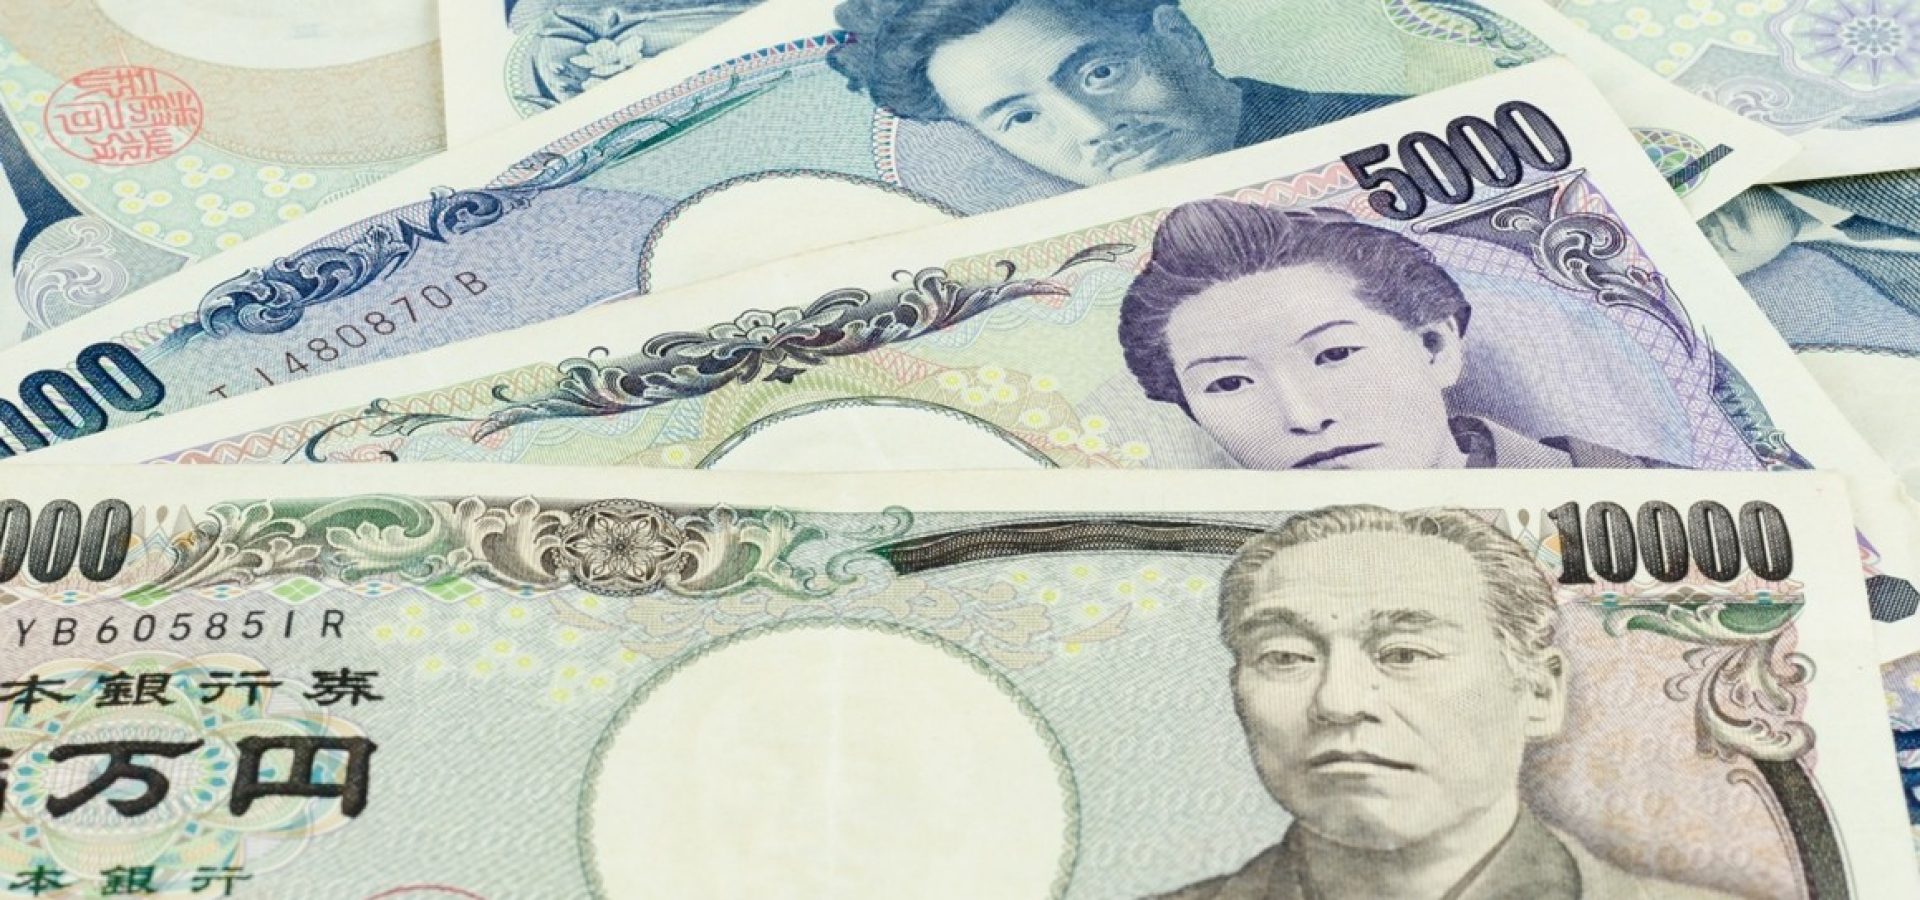 Japanese Yen strengthened